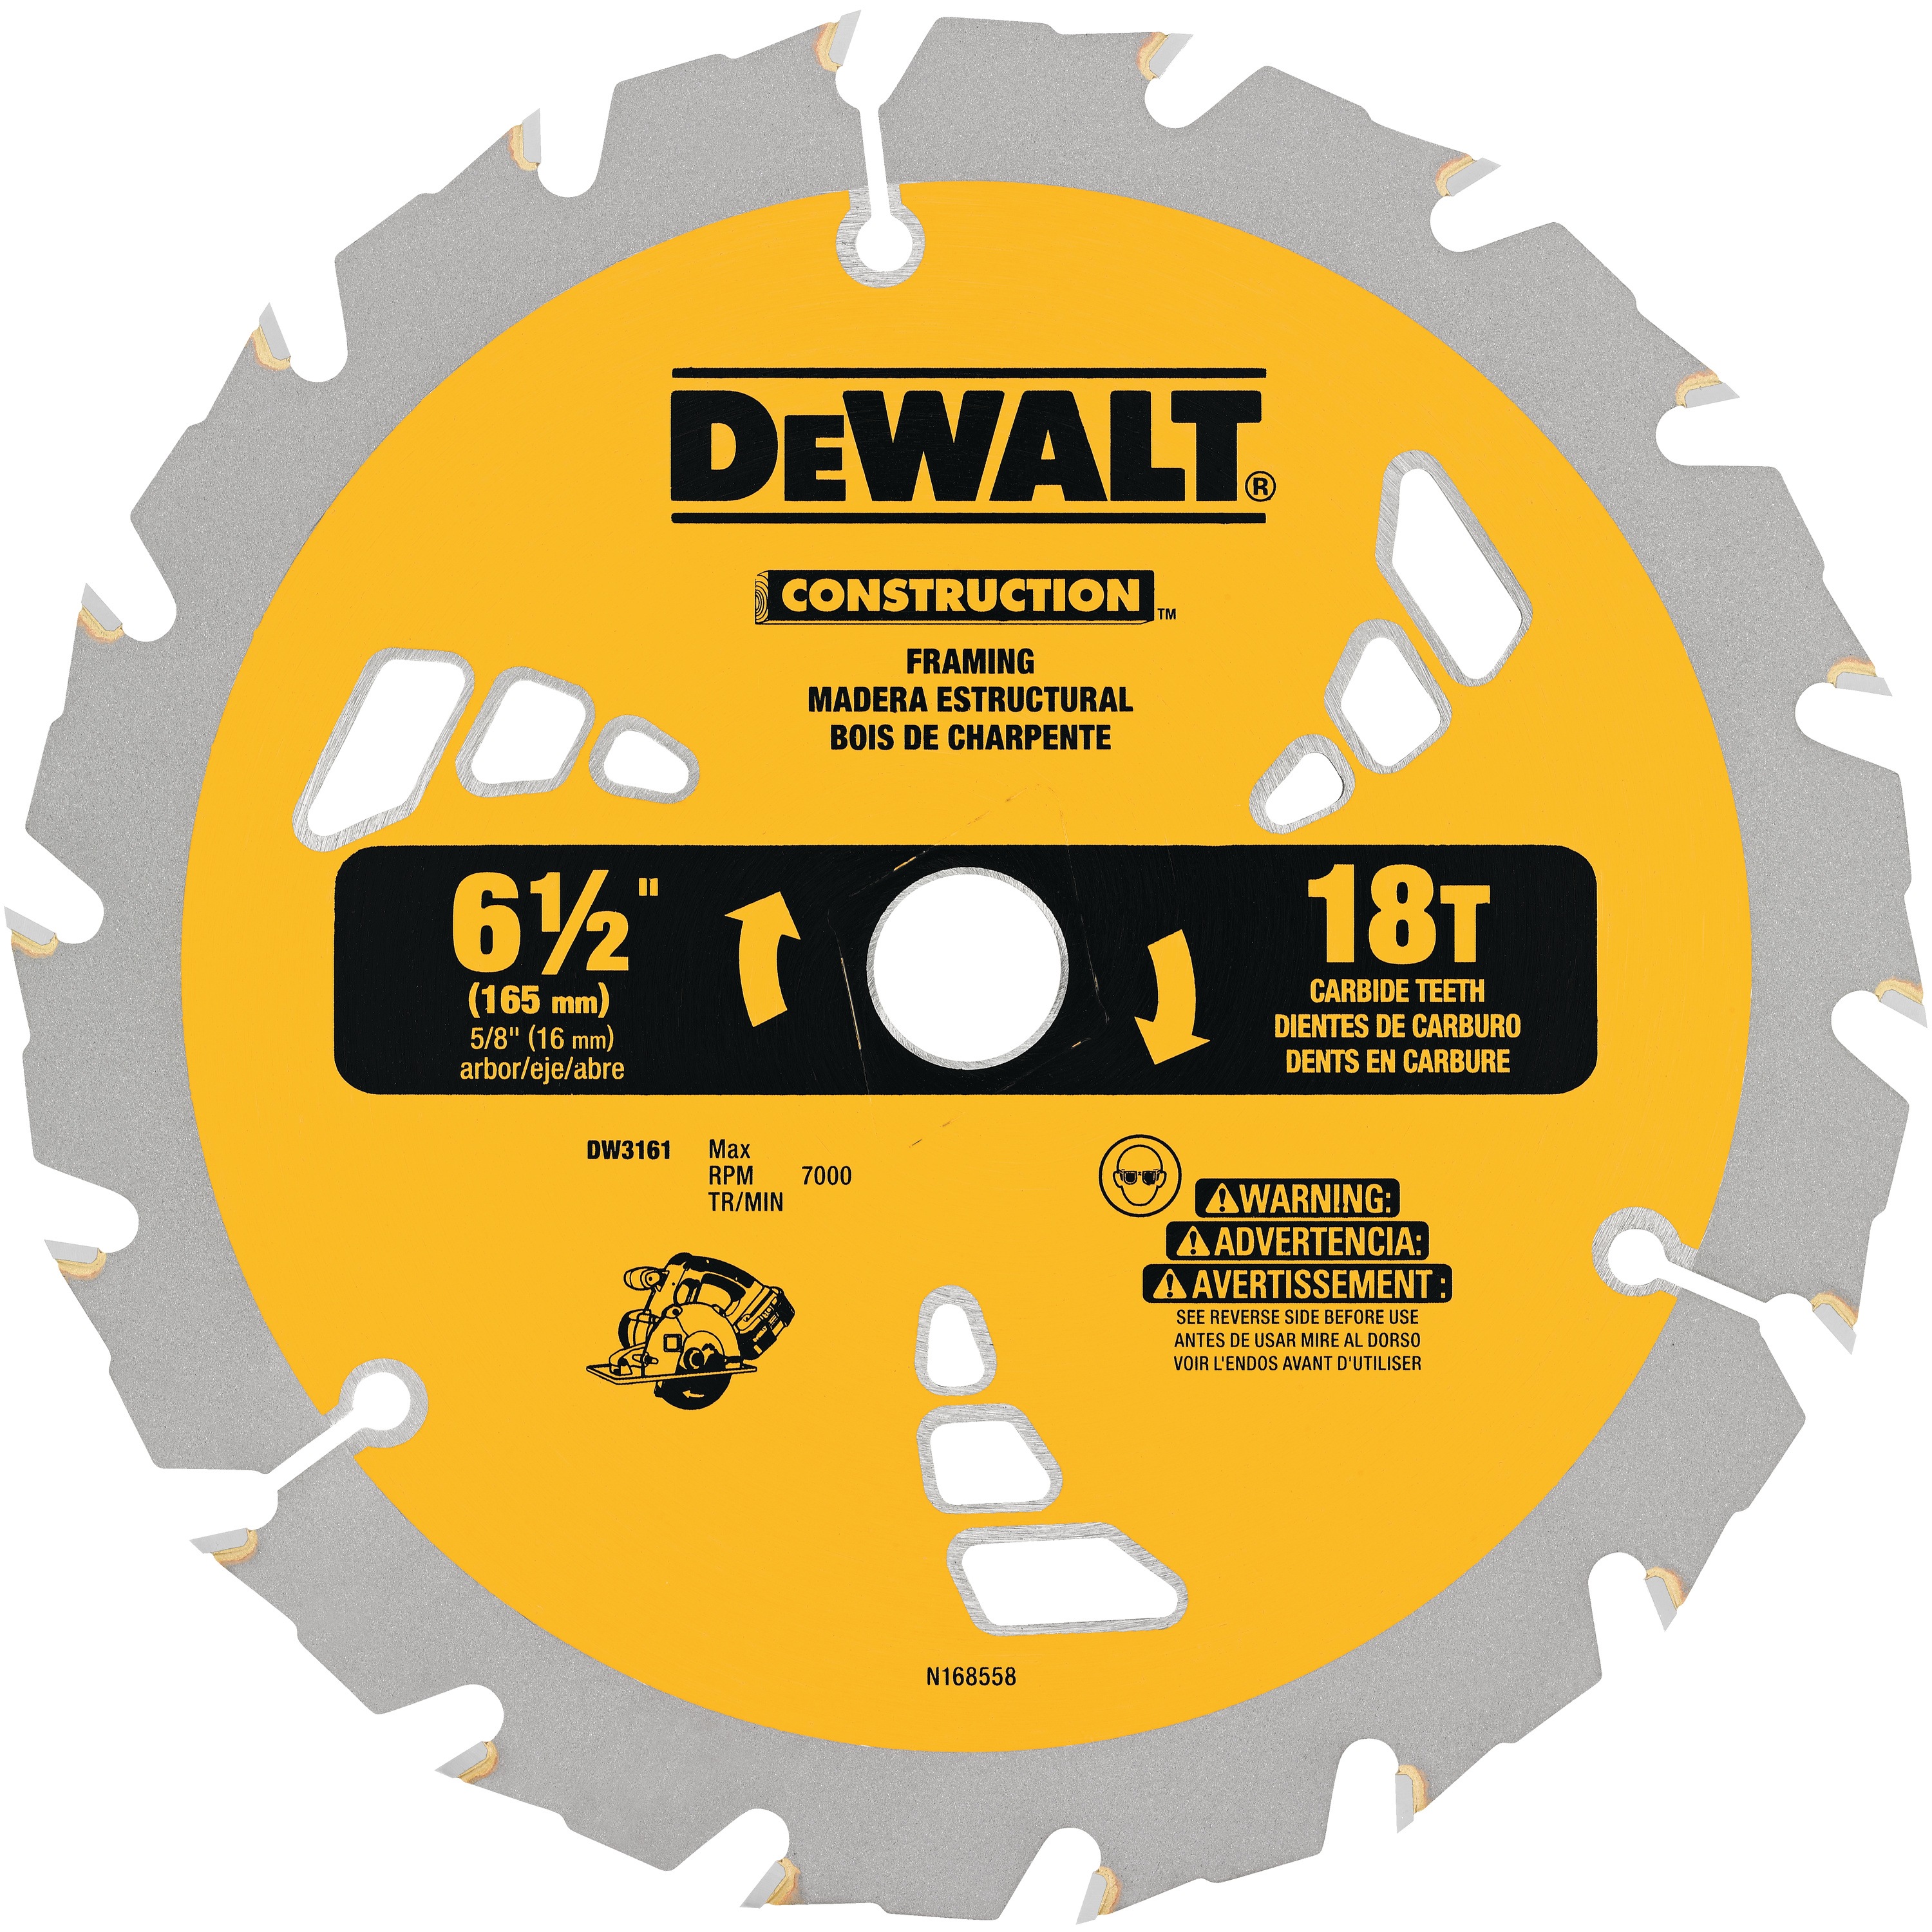 Dewalt DW3192 7-1/4" x 18 Carbide Teeth Fast Cut Framing Circular Saw Blade